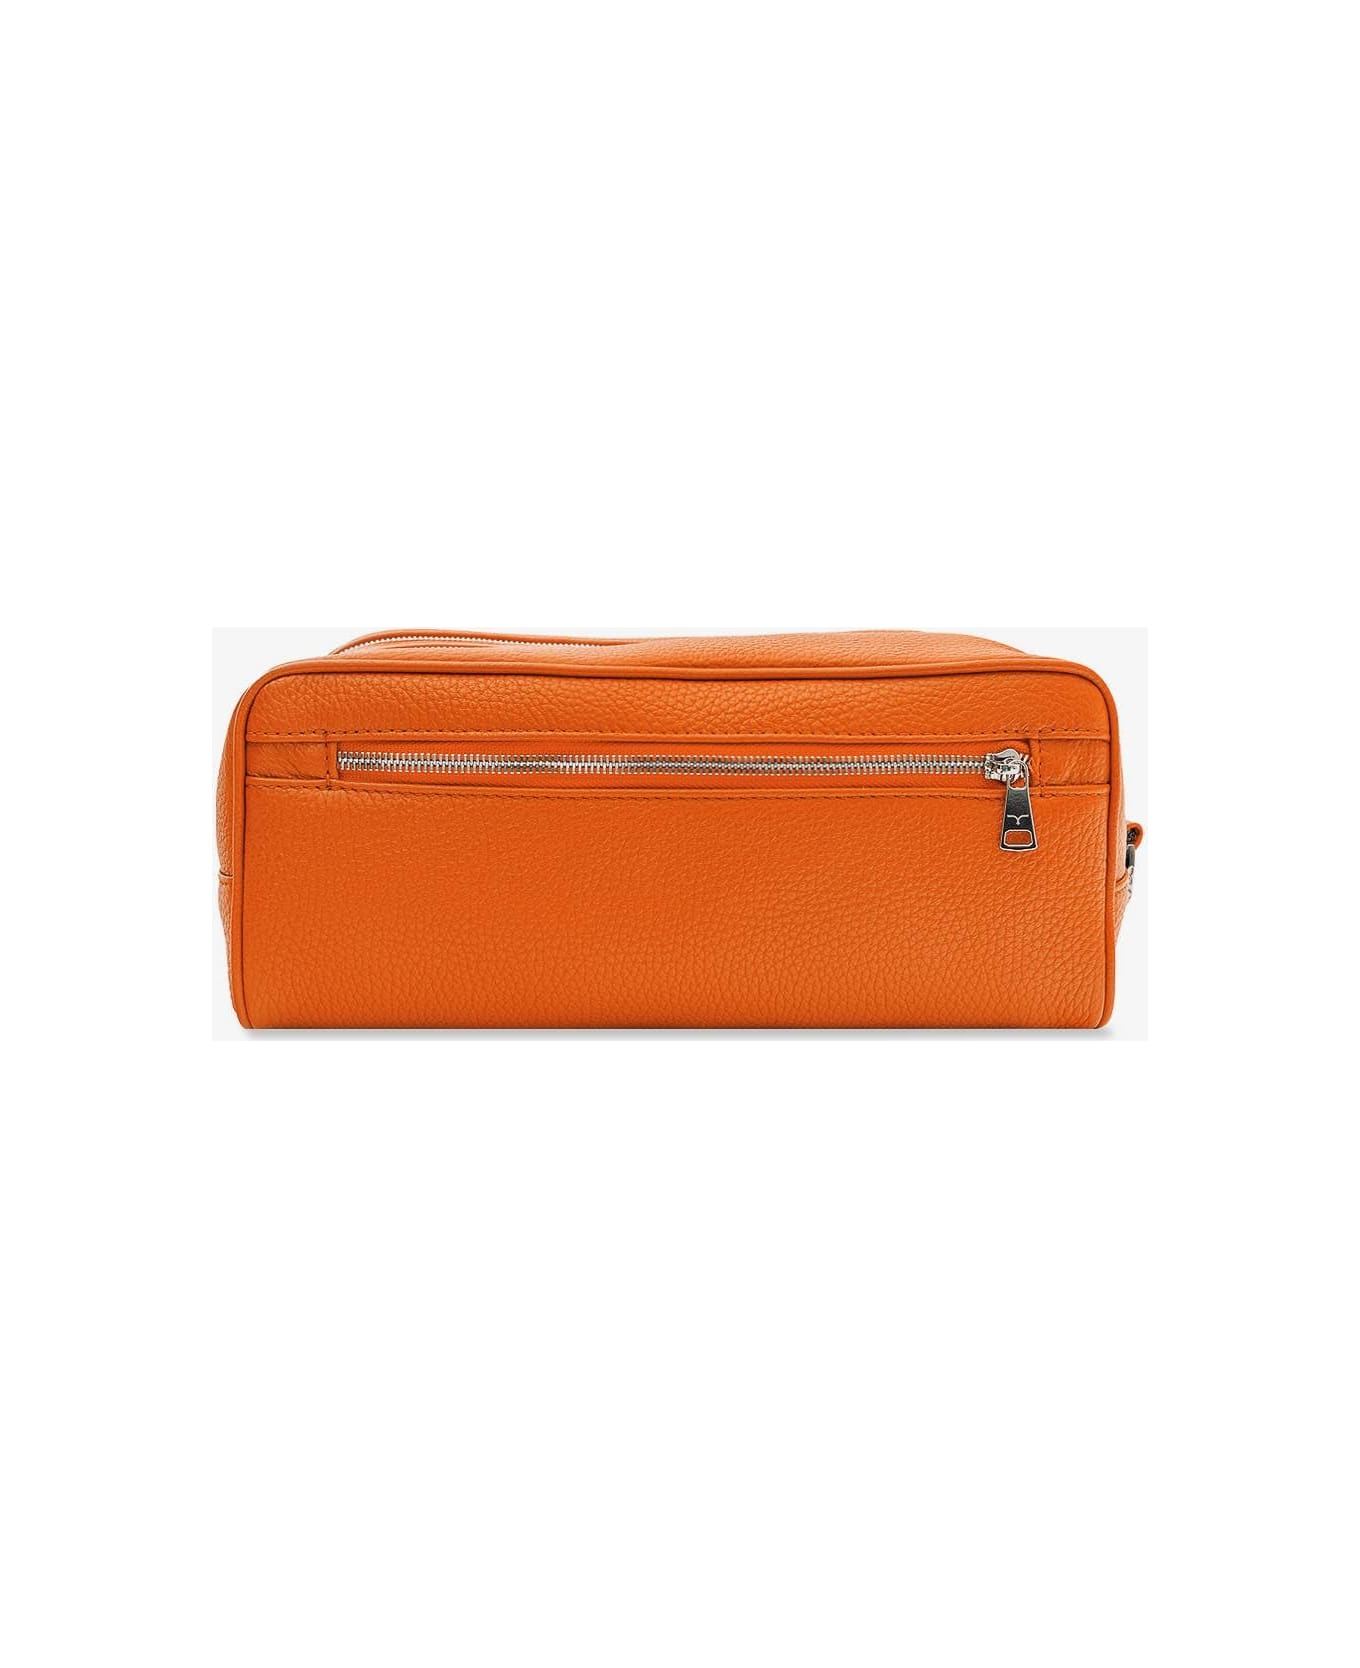 Larusmiani Wash Bag 'tzar' Luggage - Orange